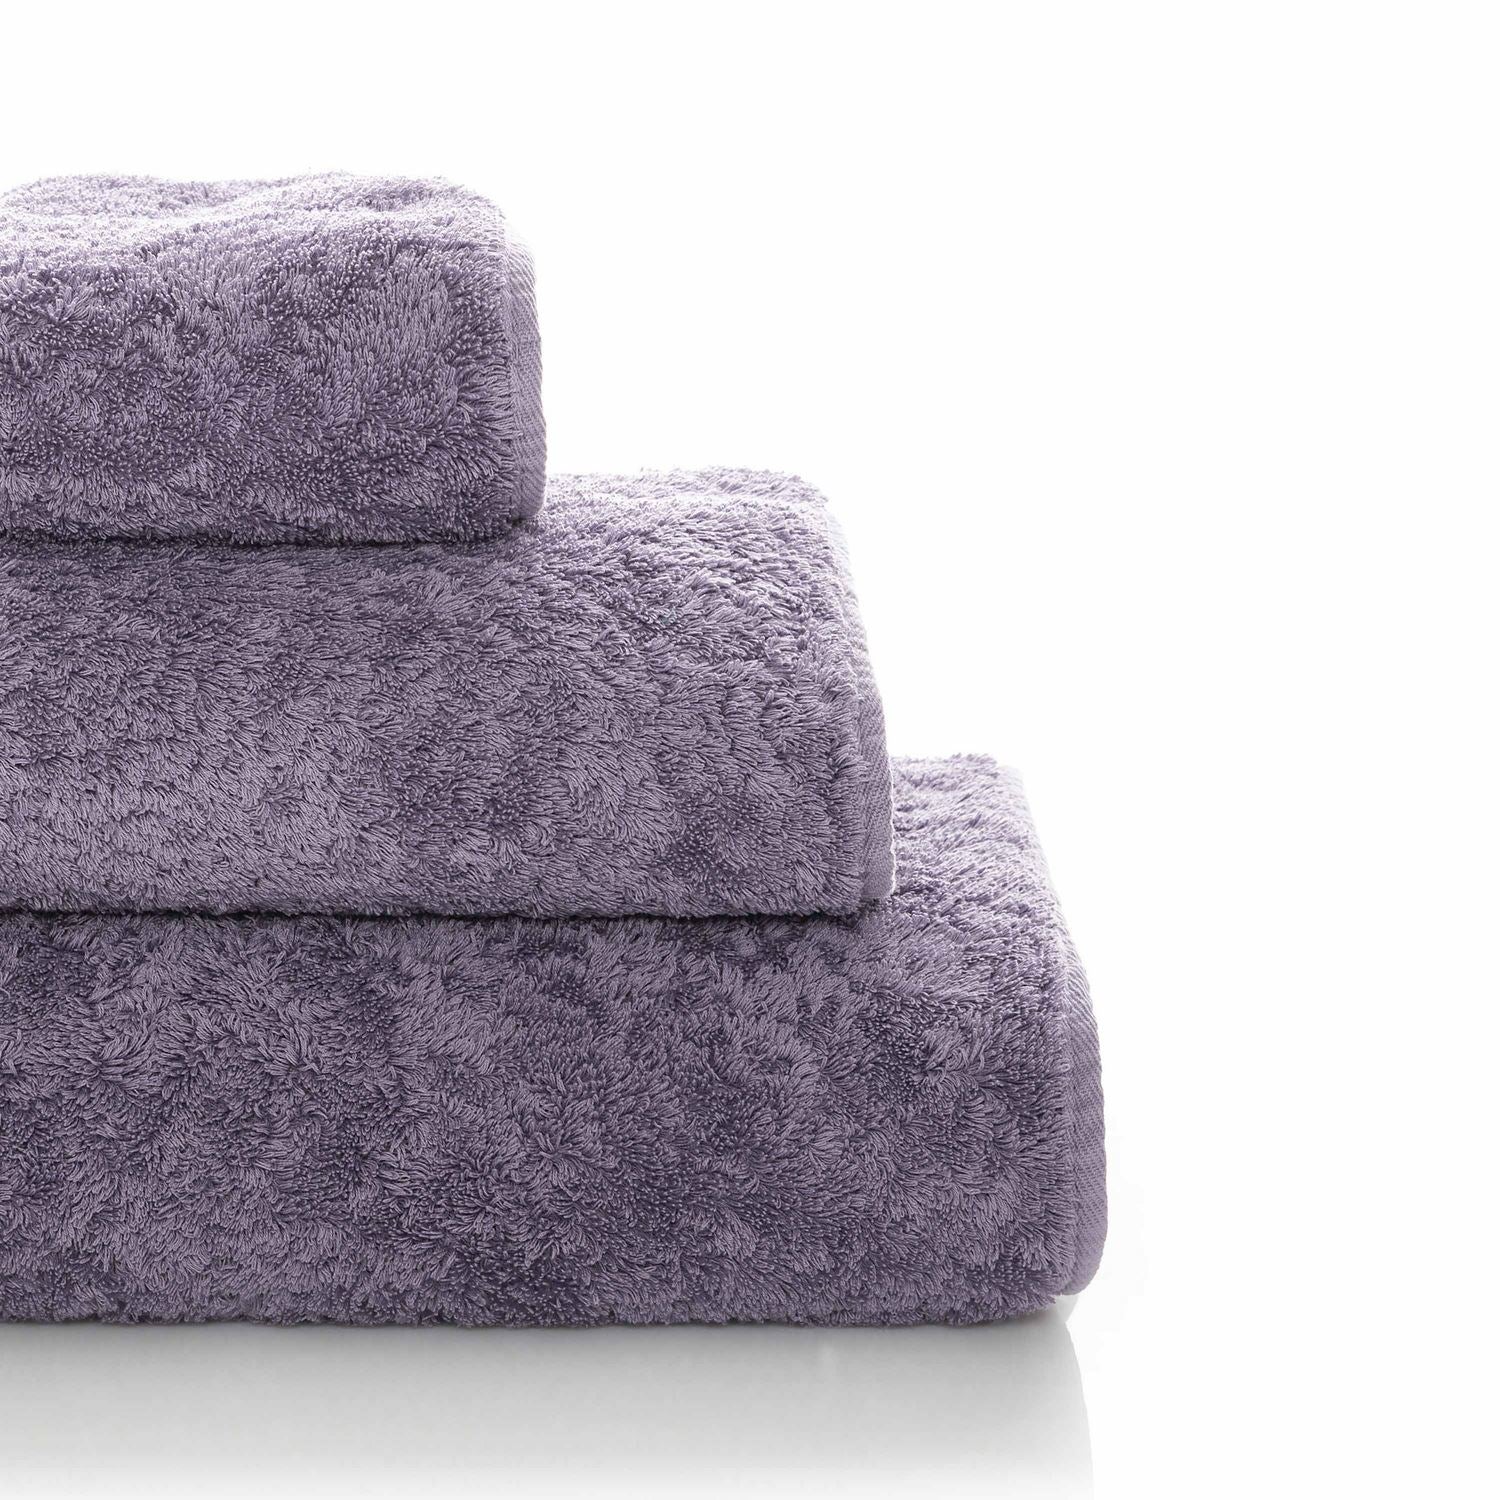 Graccioza 800 GSM Luzxury Towels - Lavender